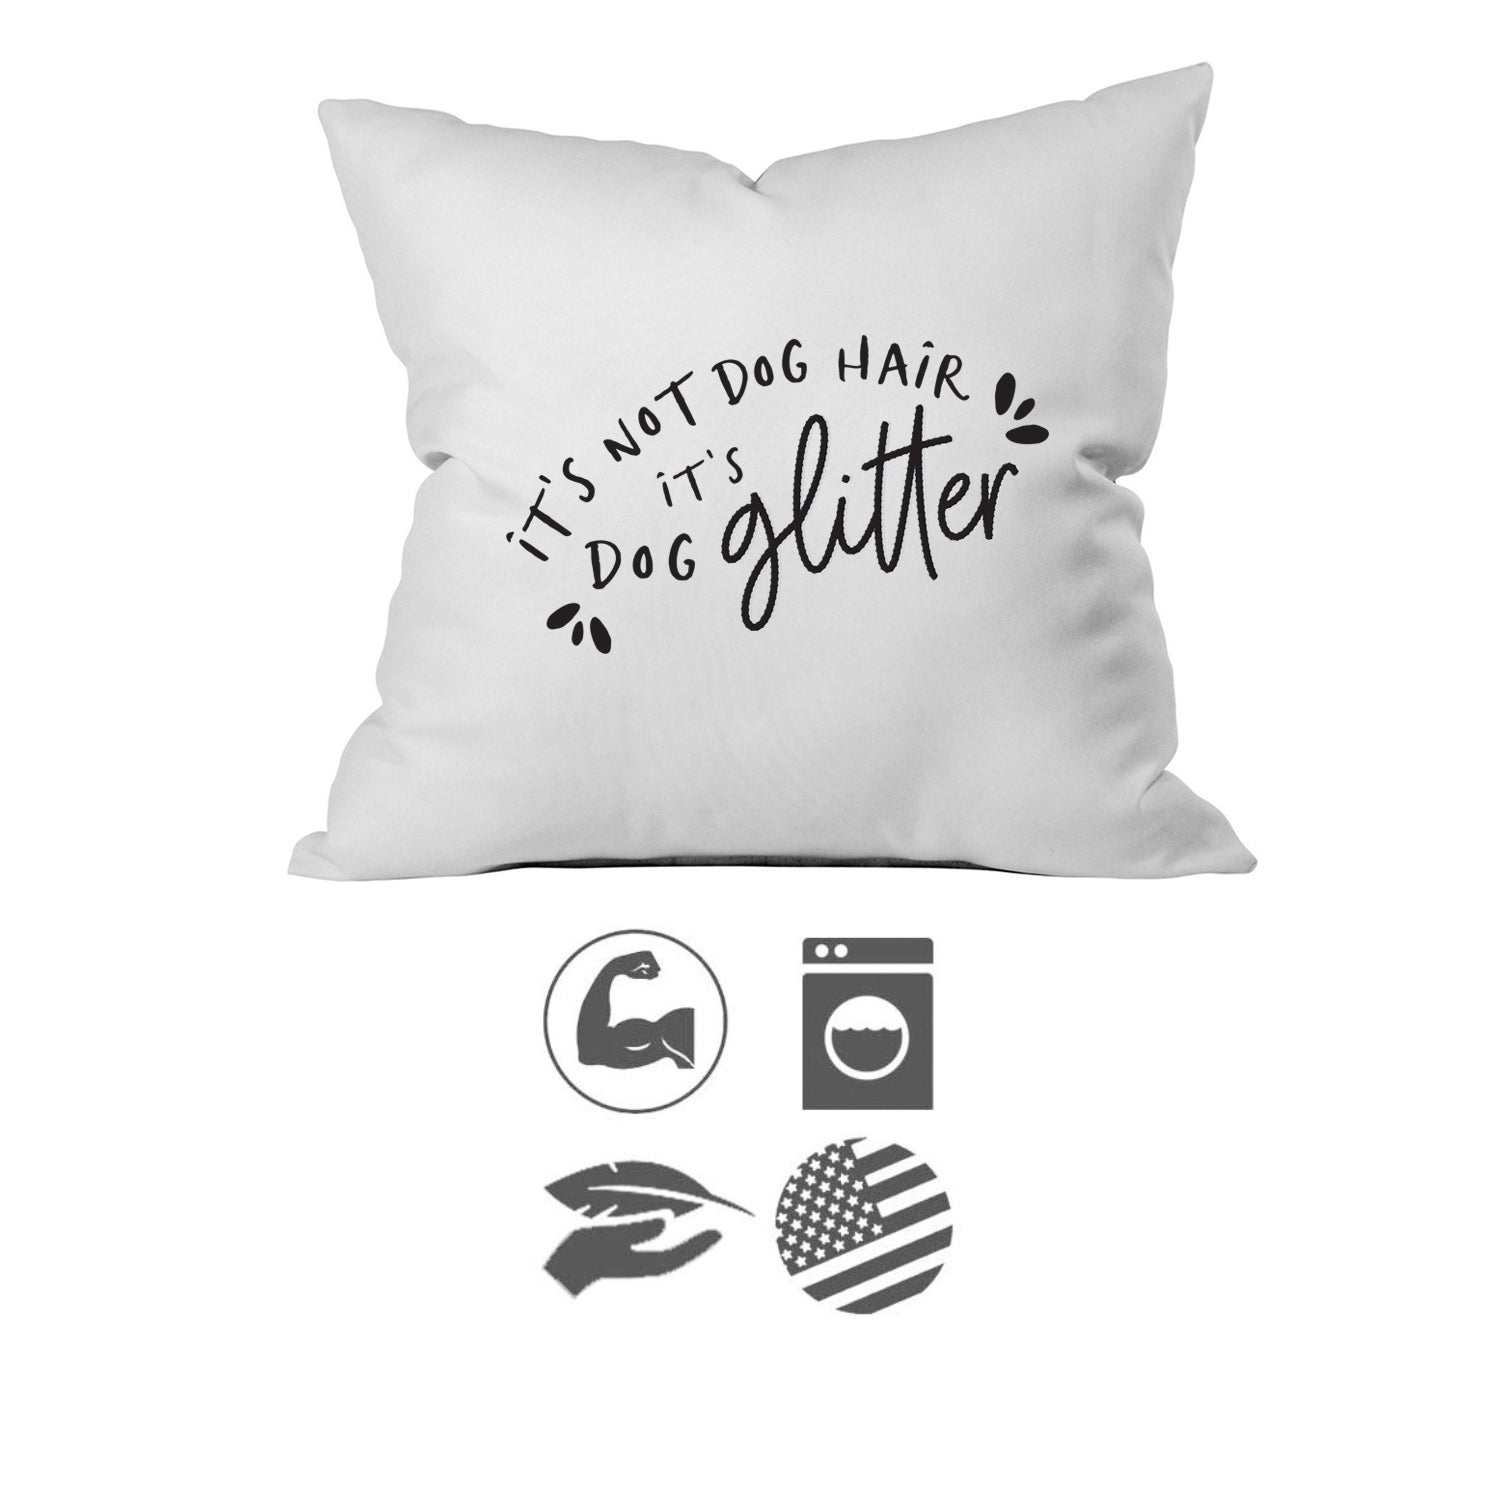 Dog Glitter (1 18x18 Inch, Pillow Cover) Dog Glitter Pillow - Pet Pillow